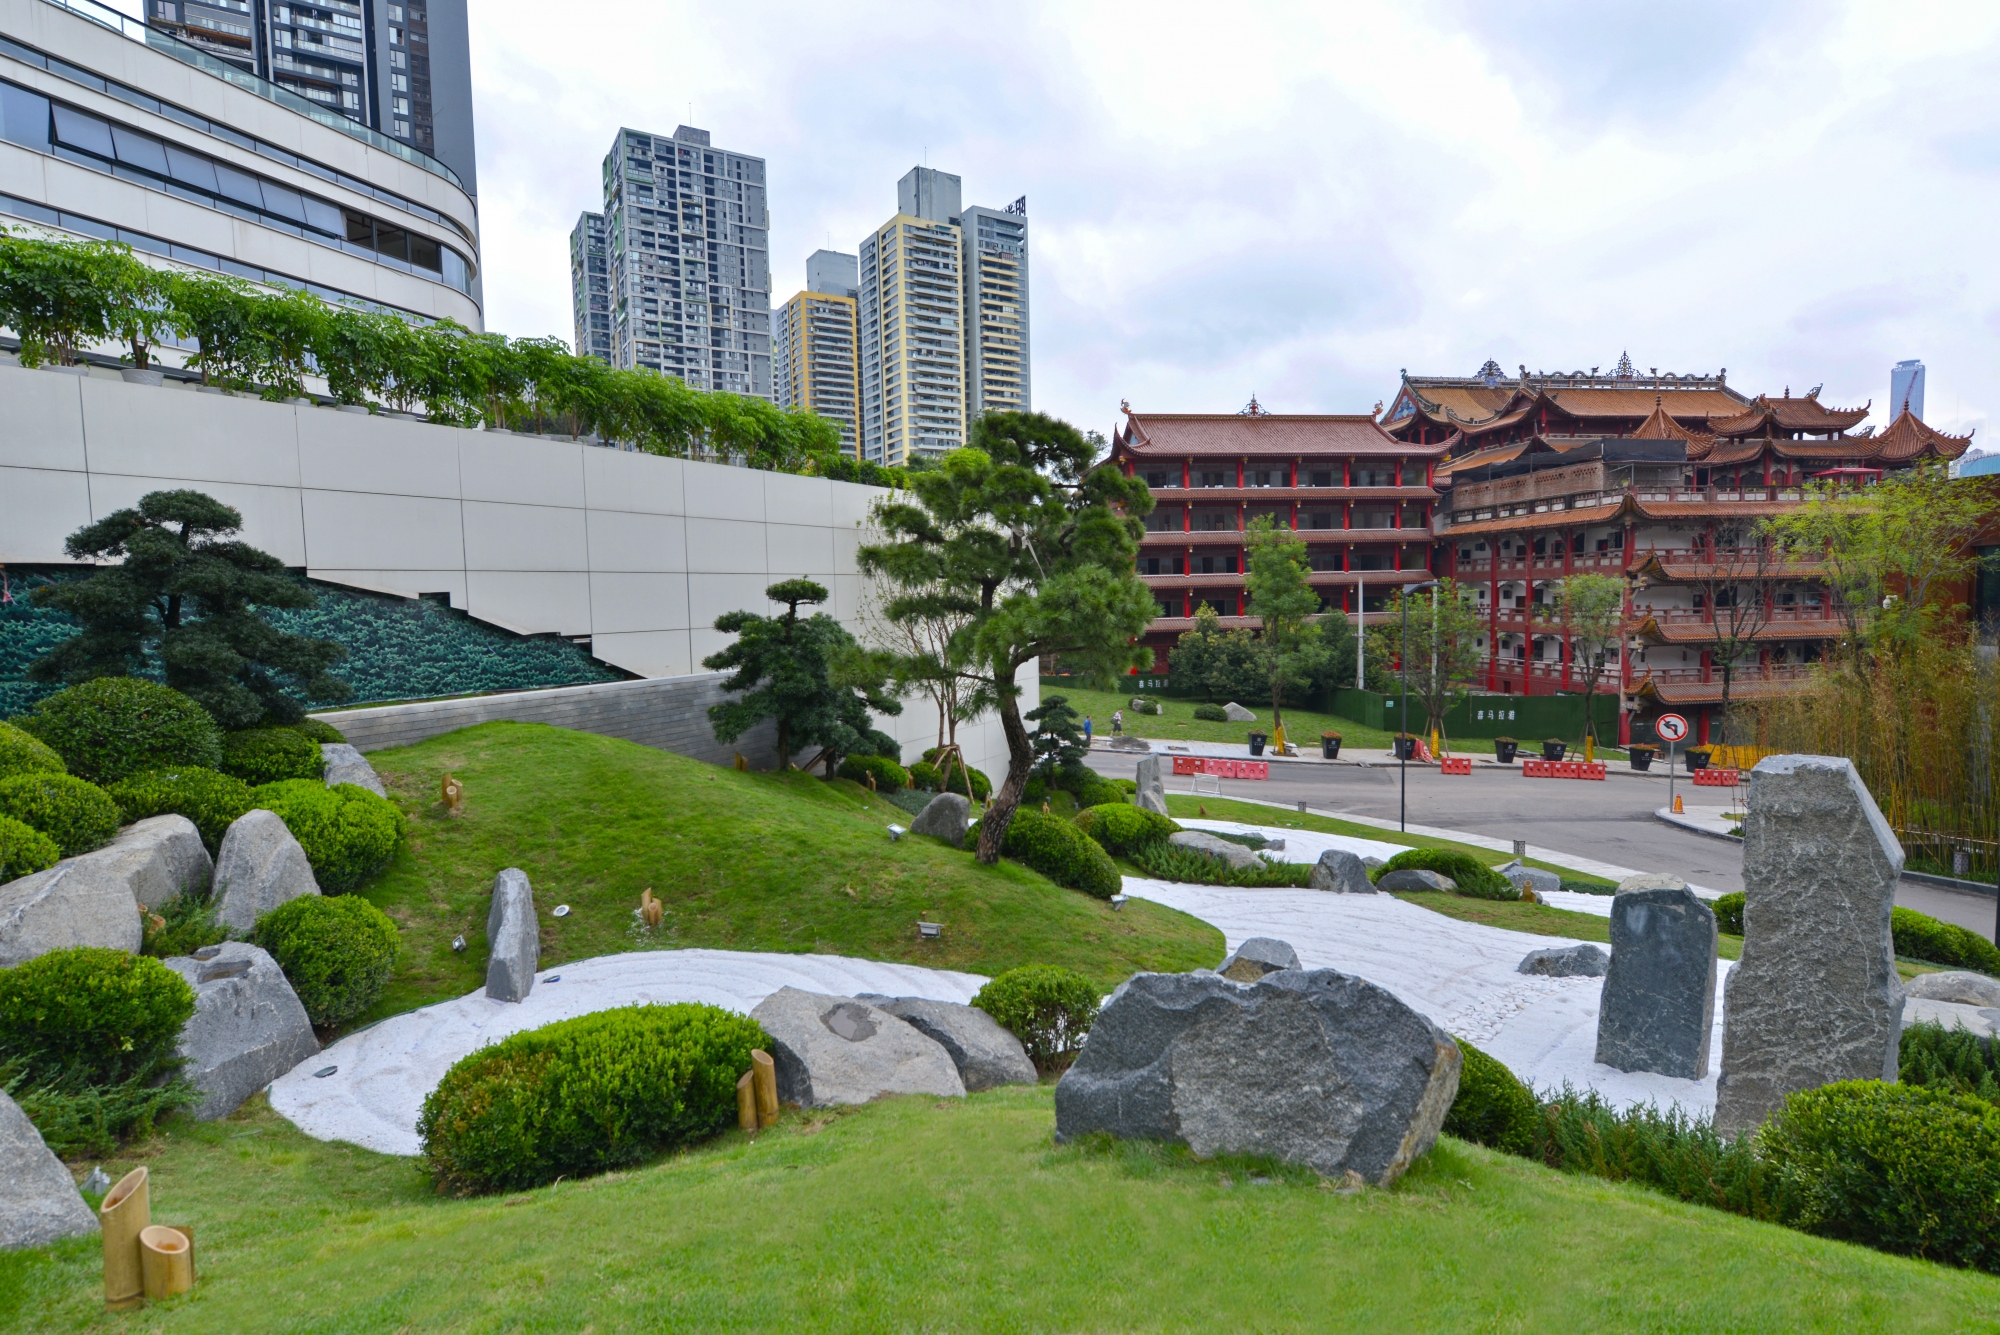 重庆喜马拉雅酒店物业管理有限公司 环境照片活动图片